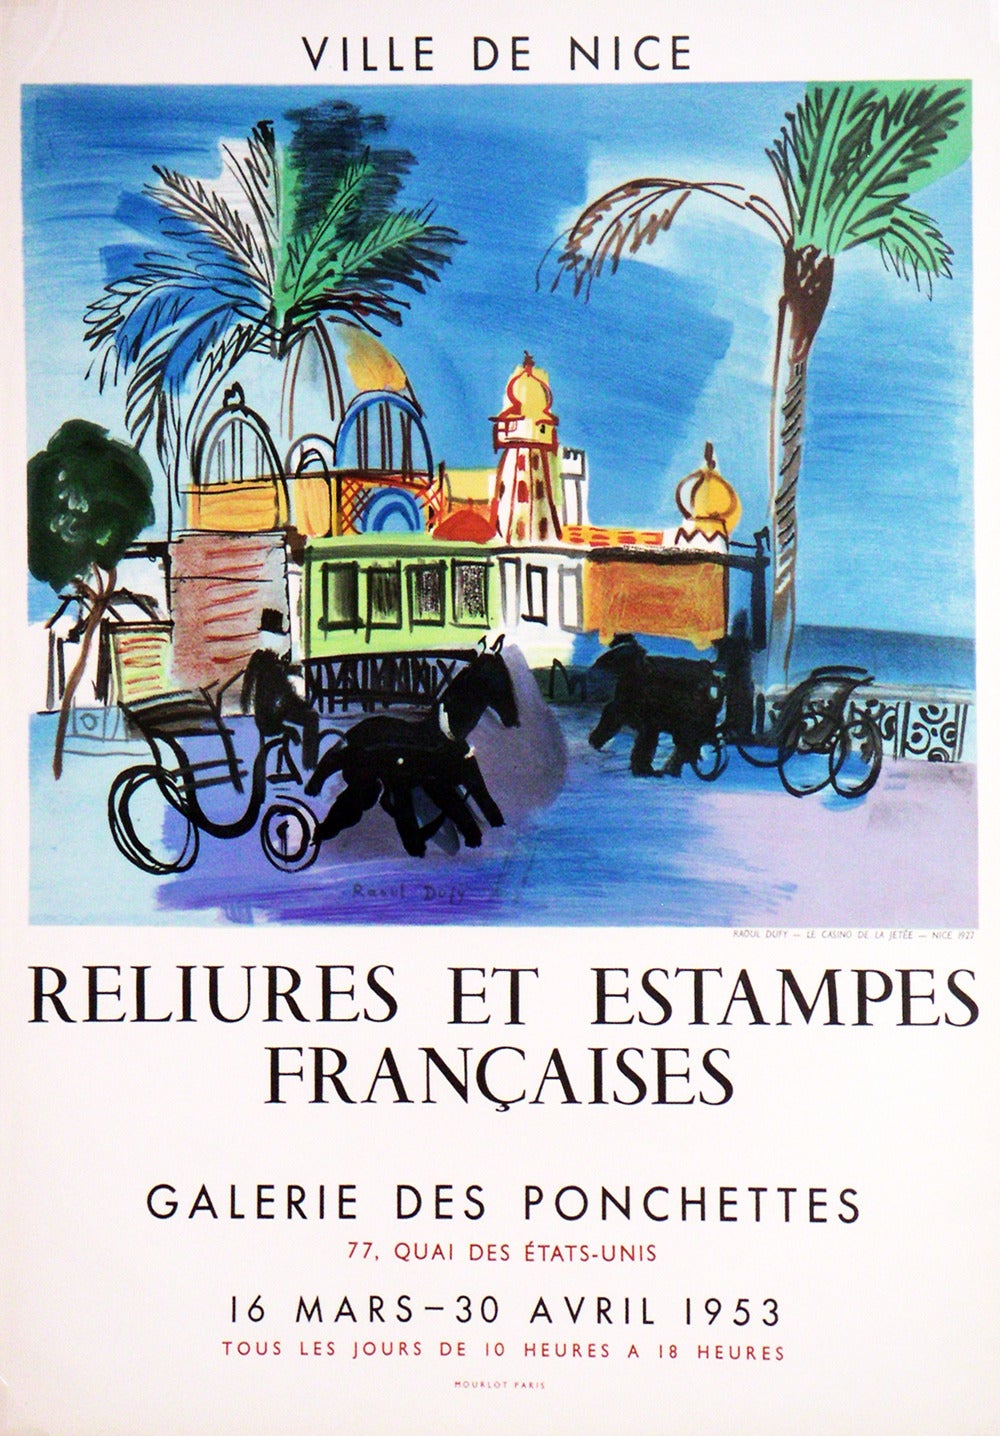 Raoul Dufy Abstract Print - Ville de Nice- Reliures et Estampes Francaises